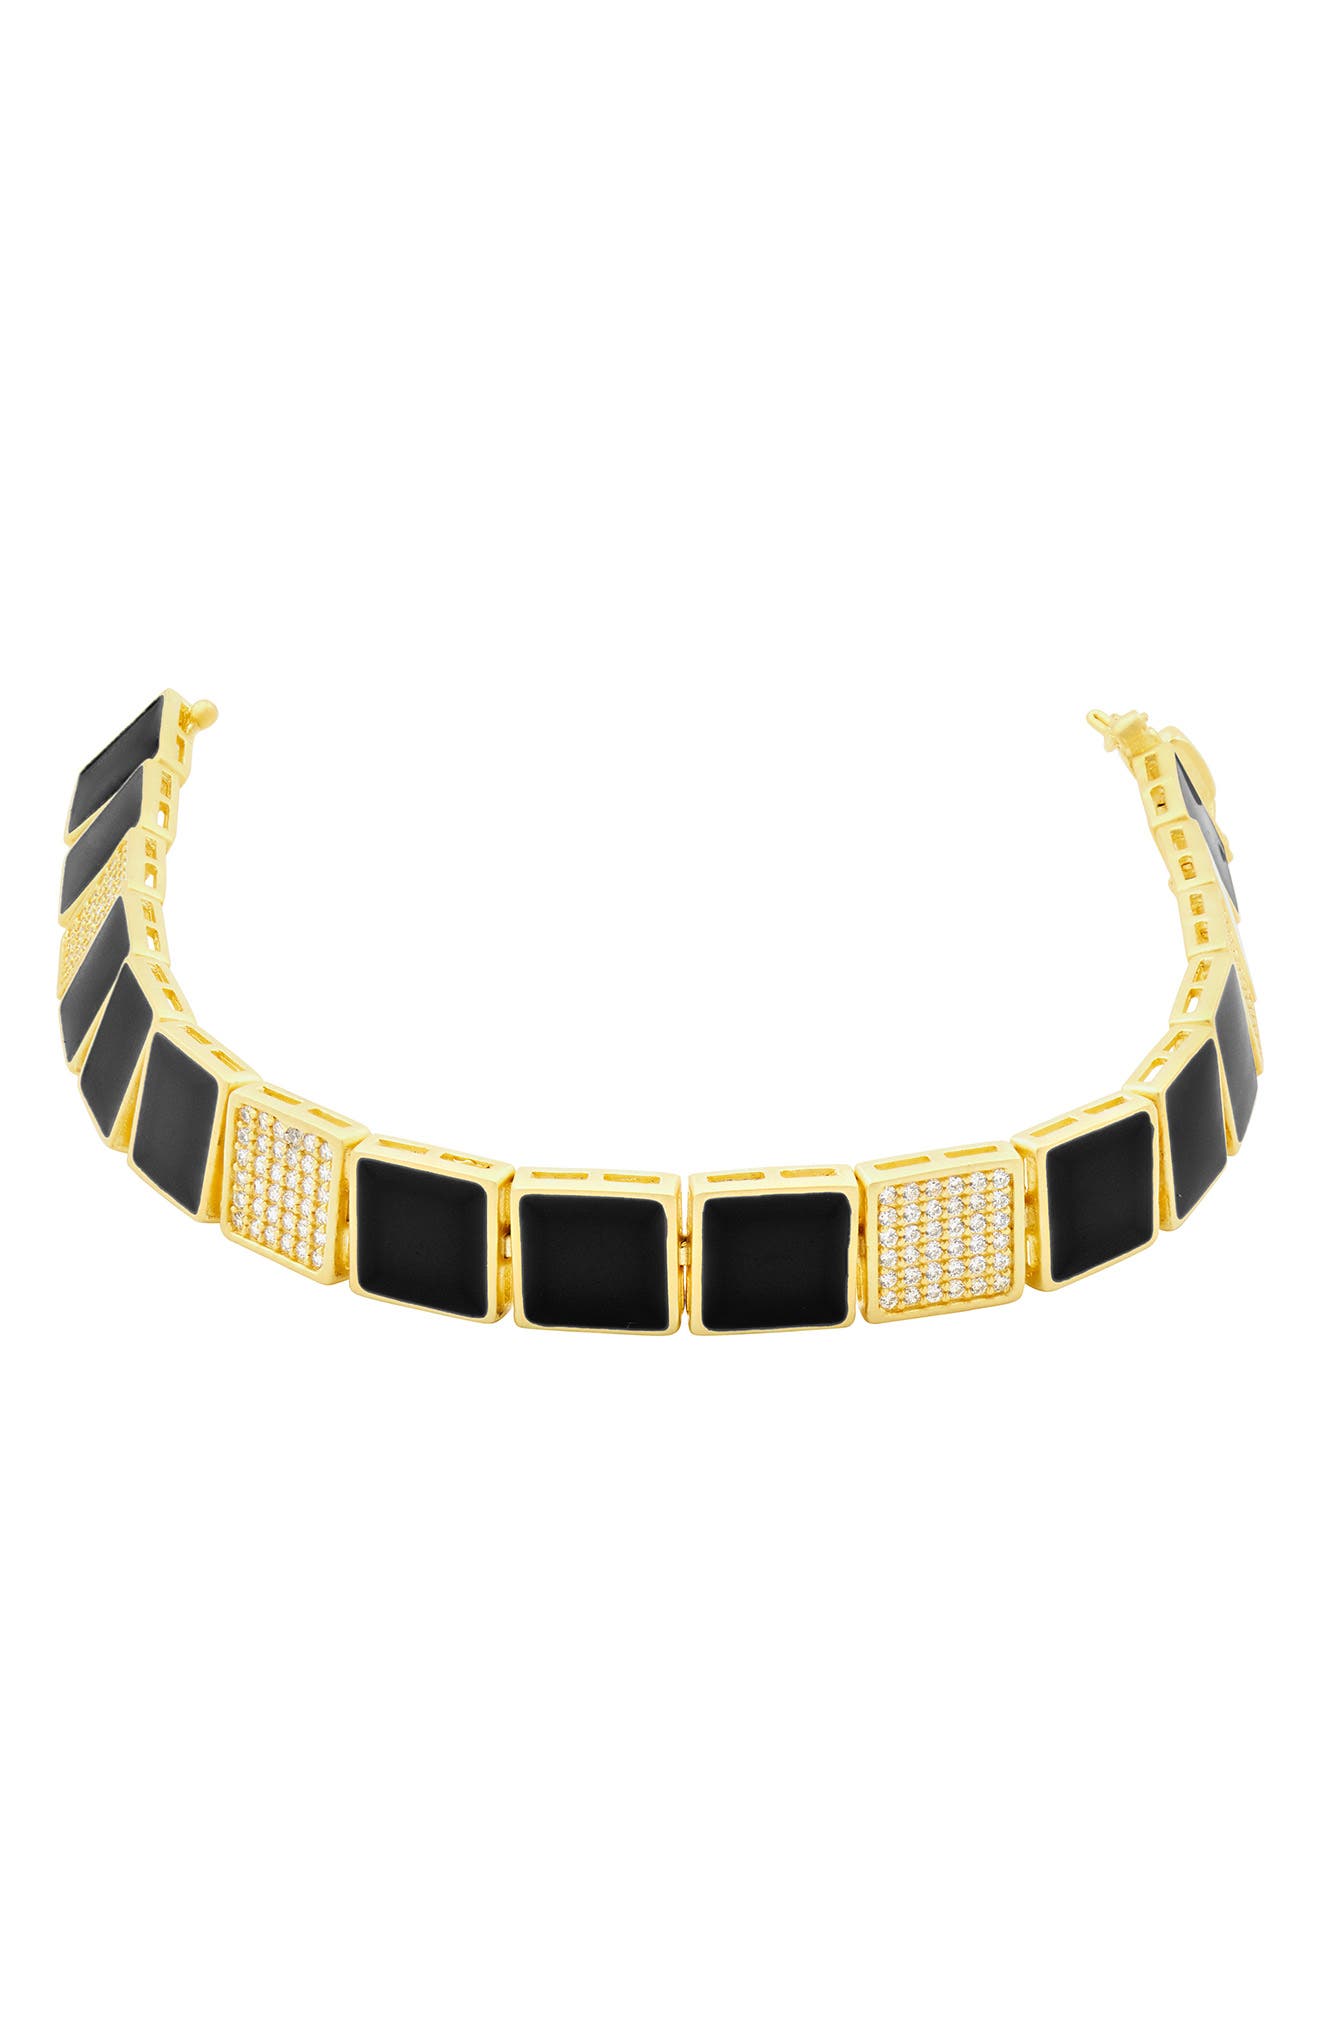 FREIDA ROTHMAN Harmony Enamel Bracelet in Gold/Black at Nordstrom -  HAYZBKB05